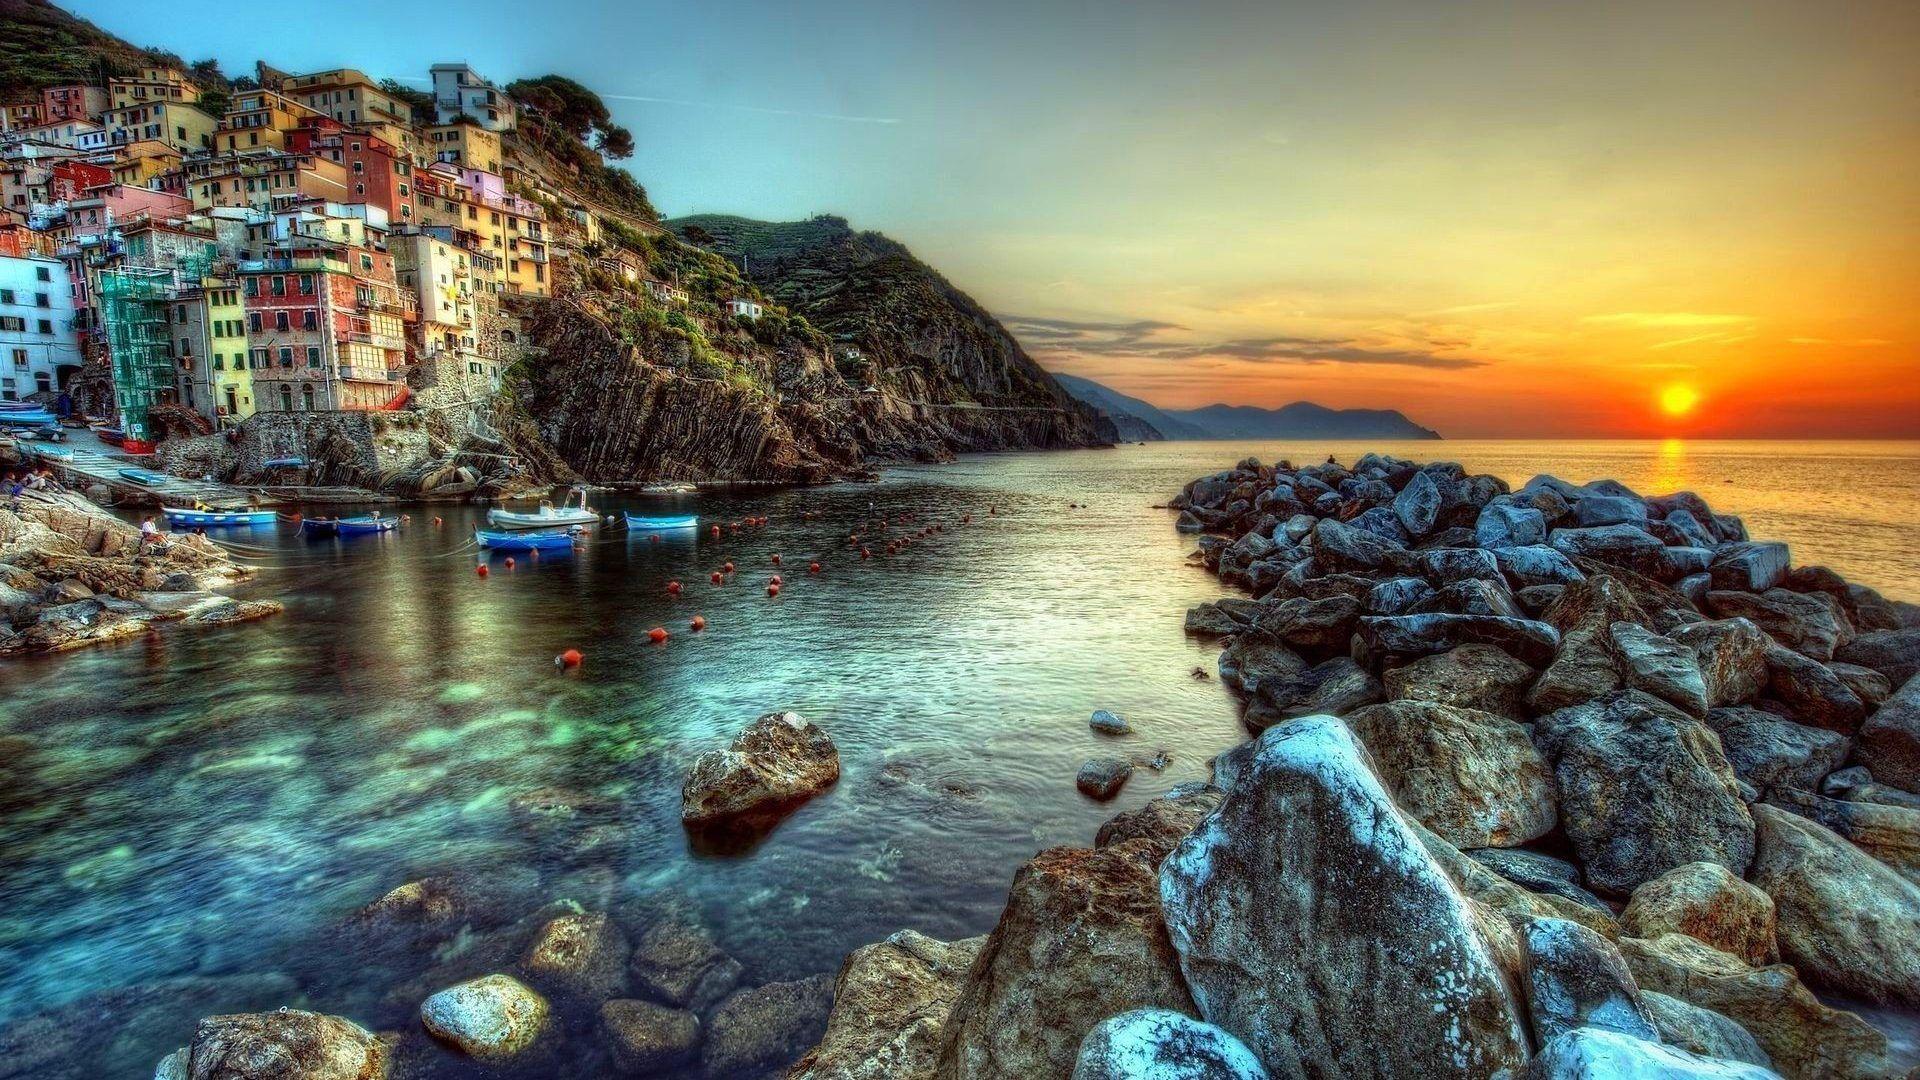 Sunset Amalfi Coast Houses Cliffs Rocks Italy Sun Sea Sunset